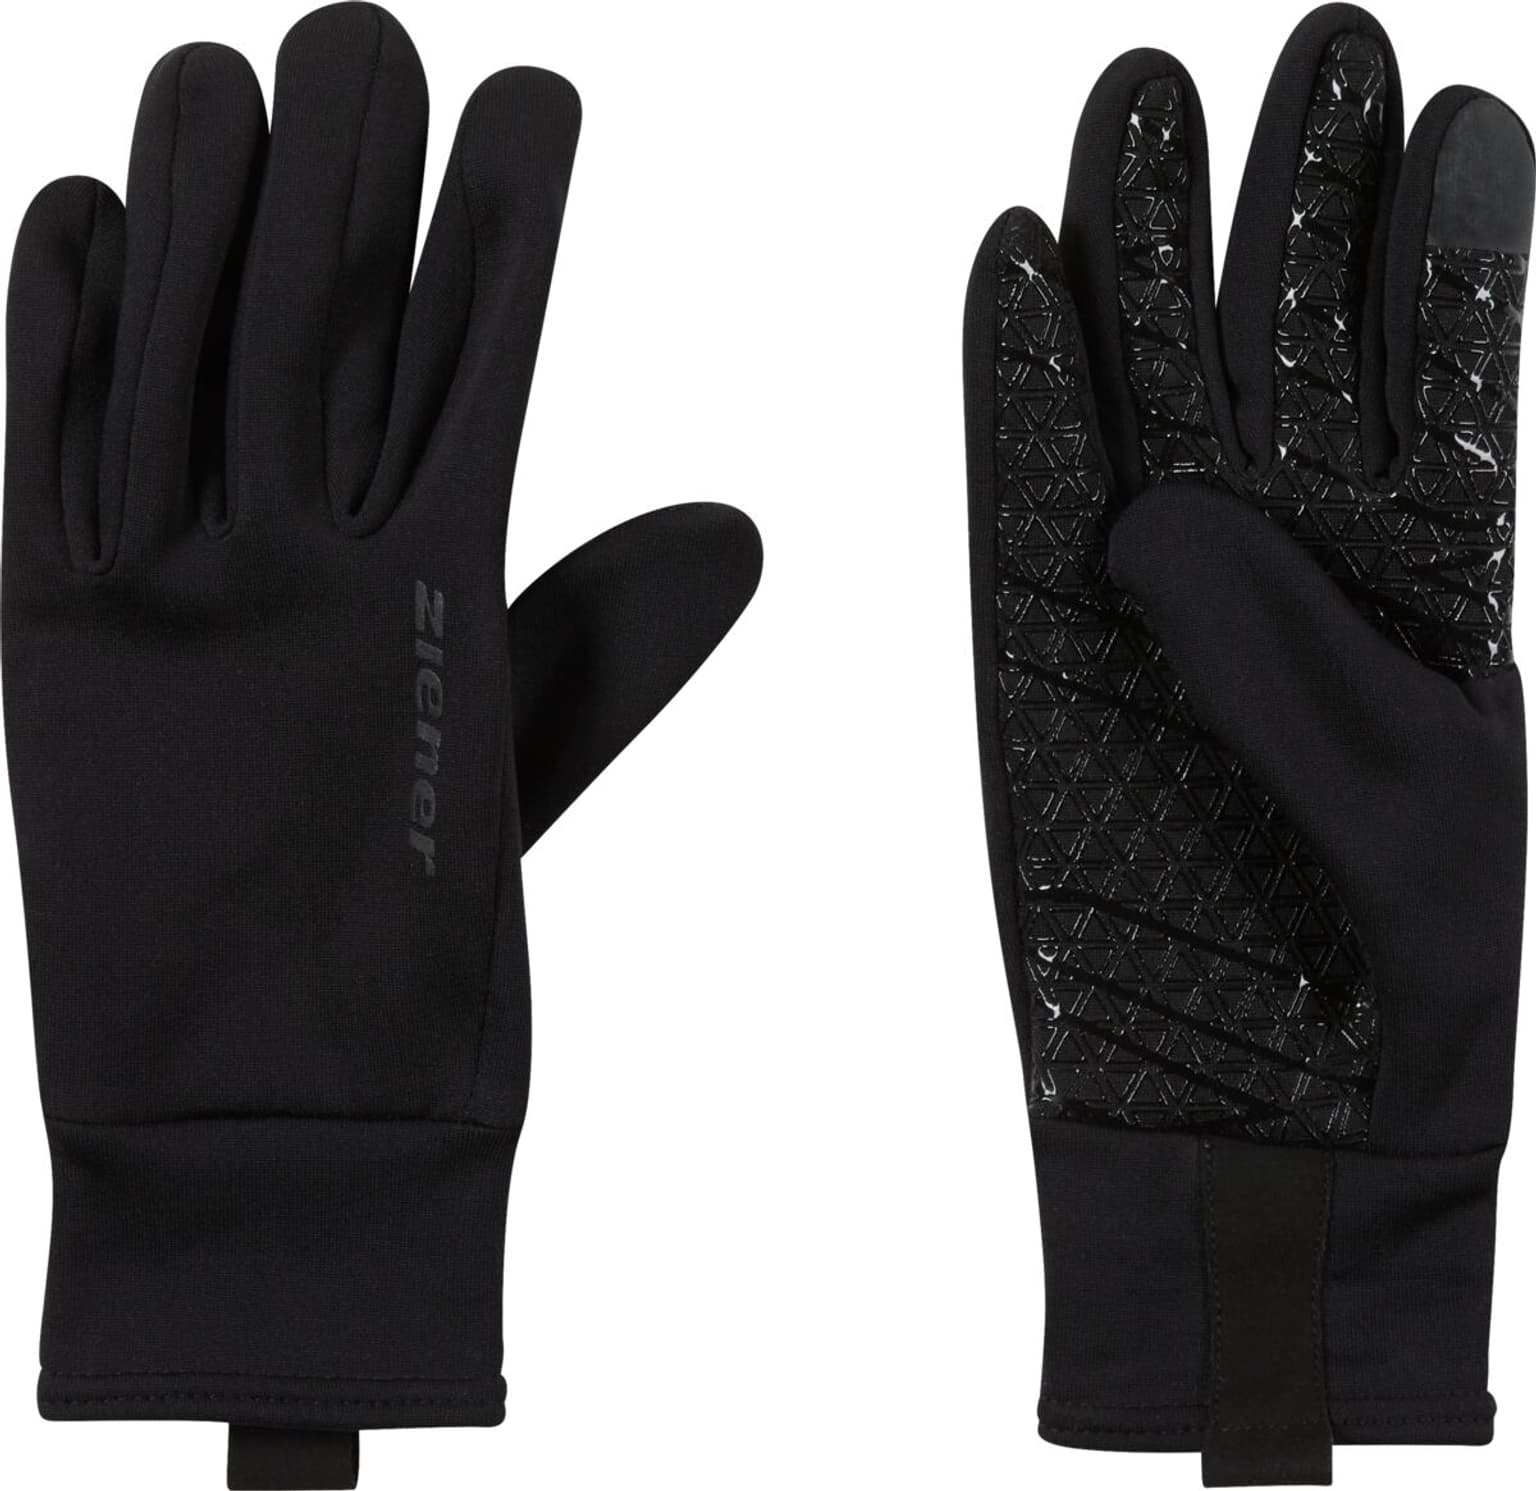 Ziener Ziener Multisport-Handschuhe Multisport-Handschuhe noir 1